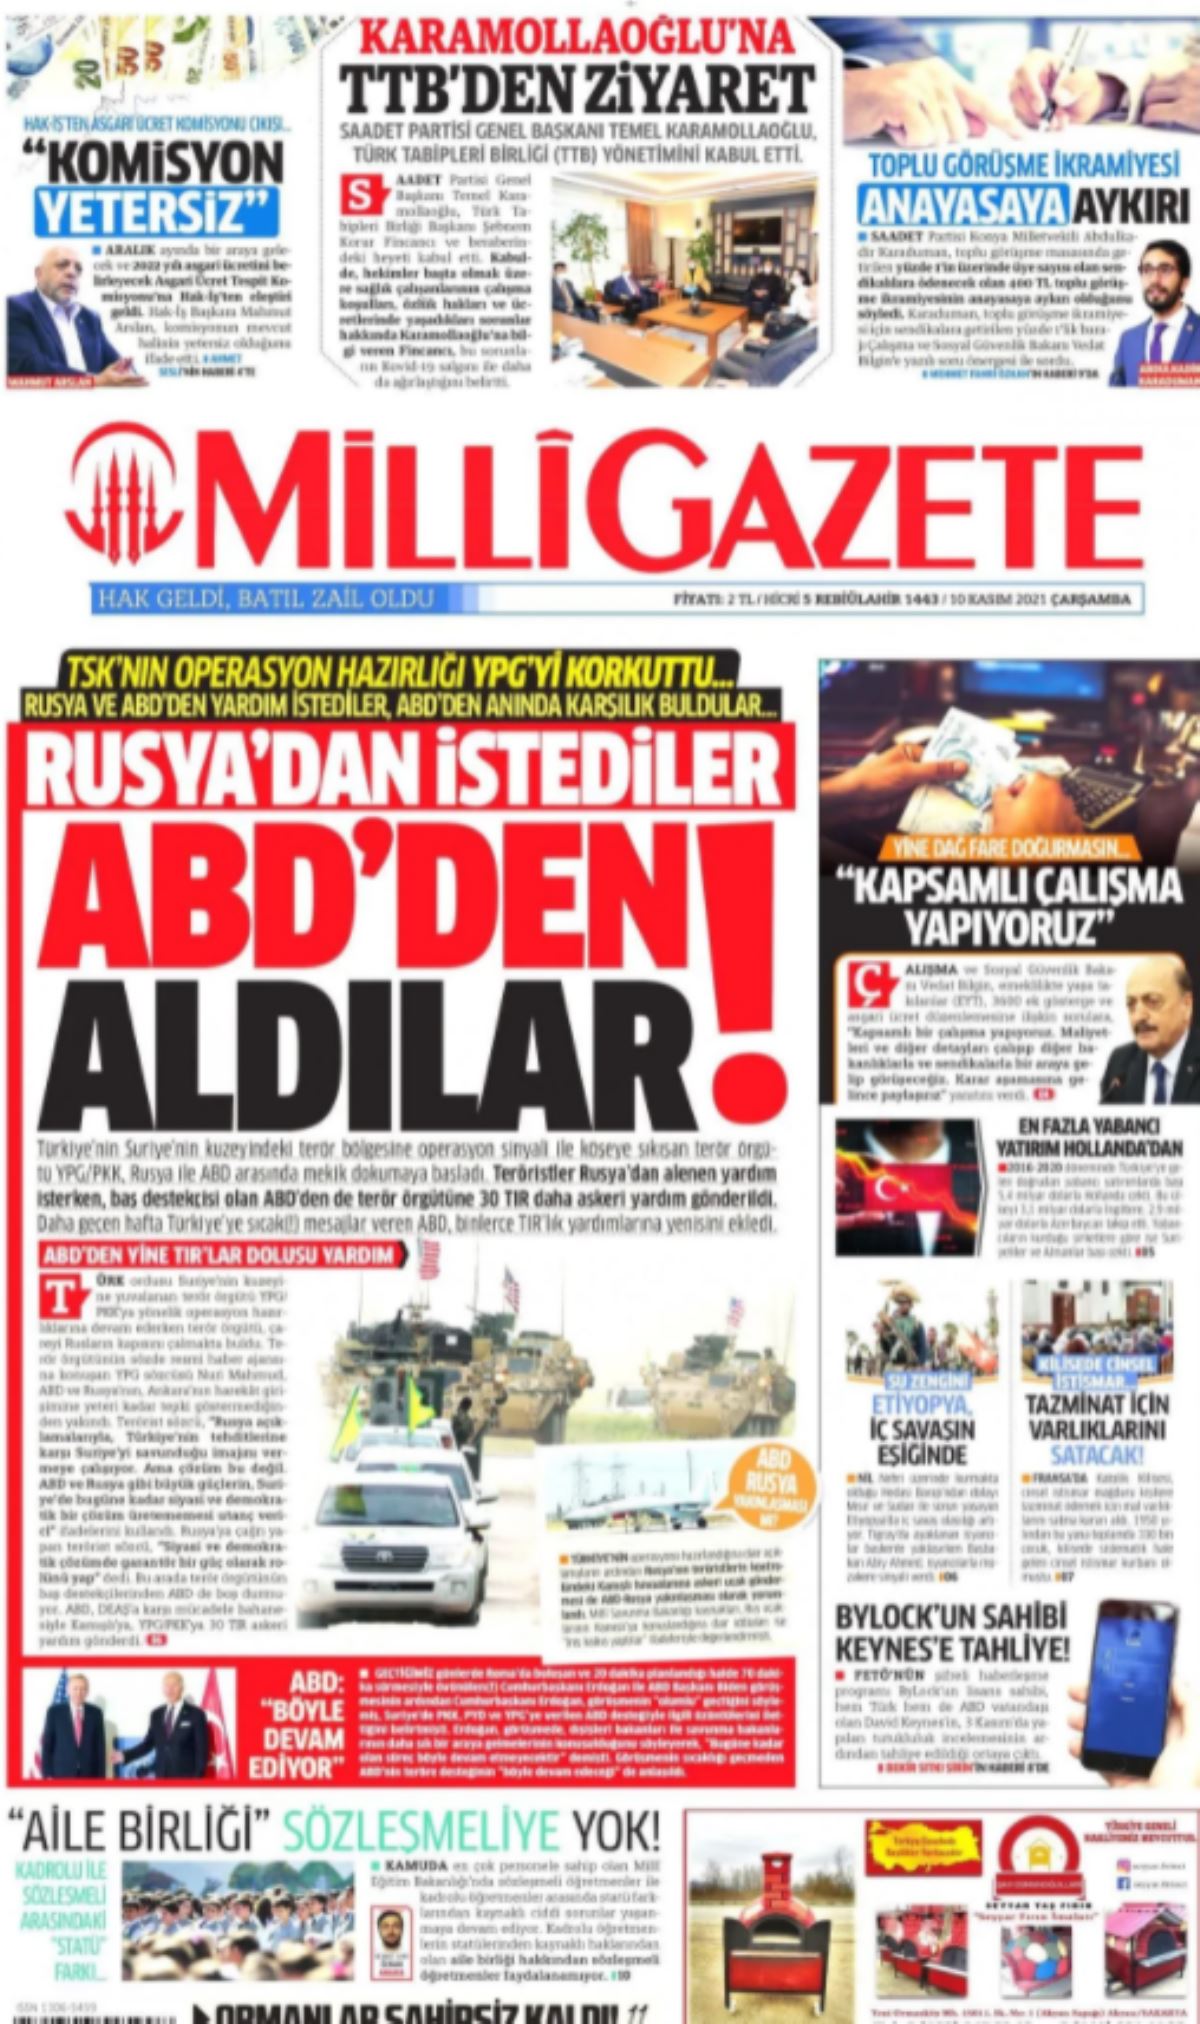 10 Kasım'da Atatürk'ü ilk sayfadan anamadılar